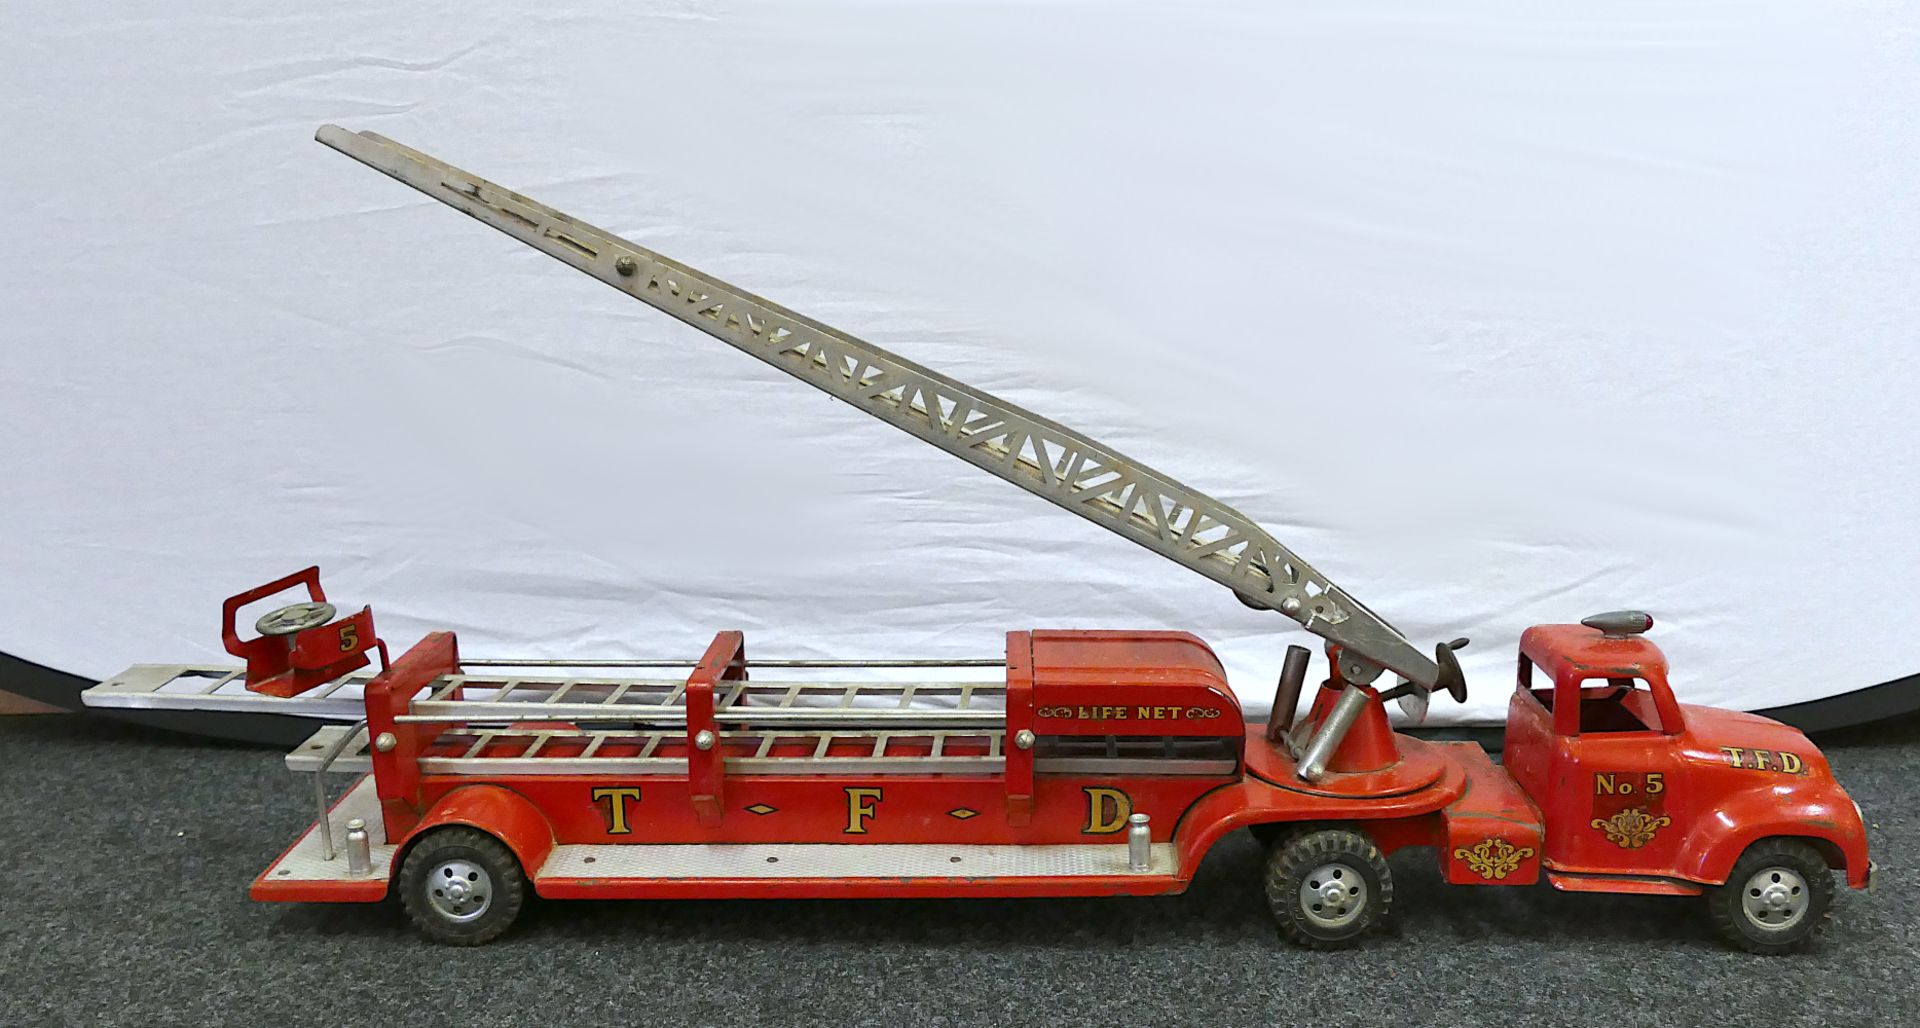 1 Feuerwehrleiterwagen TONKA, USA "T.F.D. No. 5" wohl 1950er Jahre, rot lackierter Stahl u.a., ca. L - Bild 3 aus 8